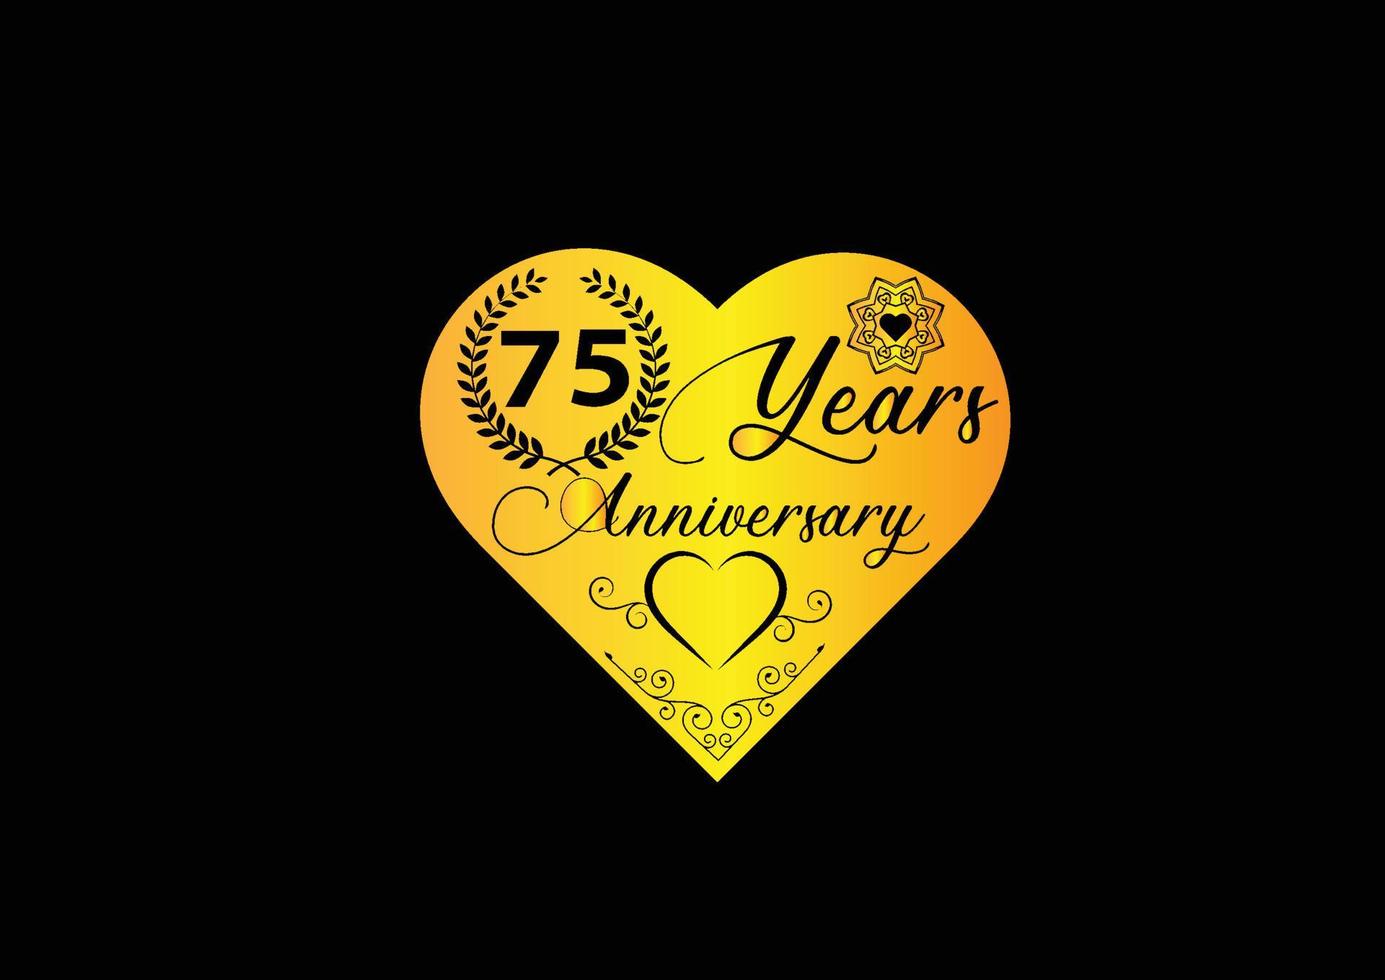 Célébration d'anniversaire de 75 ans avec logo d'amour et conception d'icônes vecteur